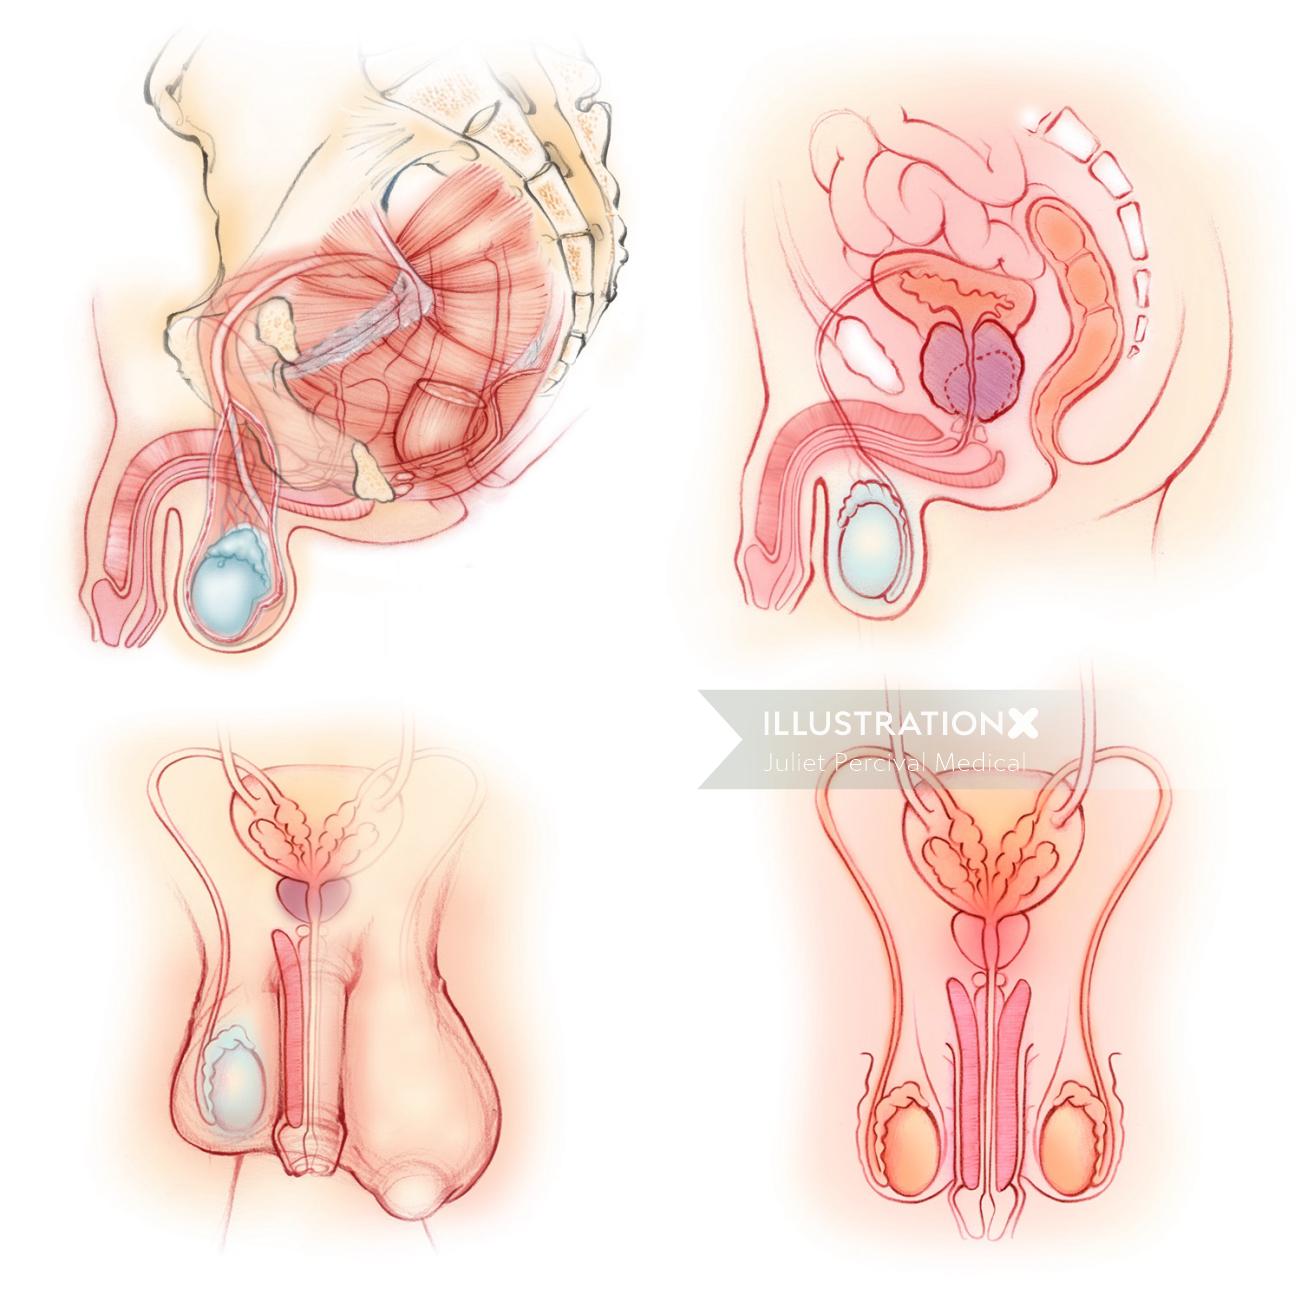 解剖学、男性、生殖器官、骨盤底筋、陰茎、前立腺